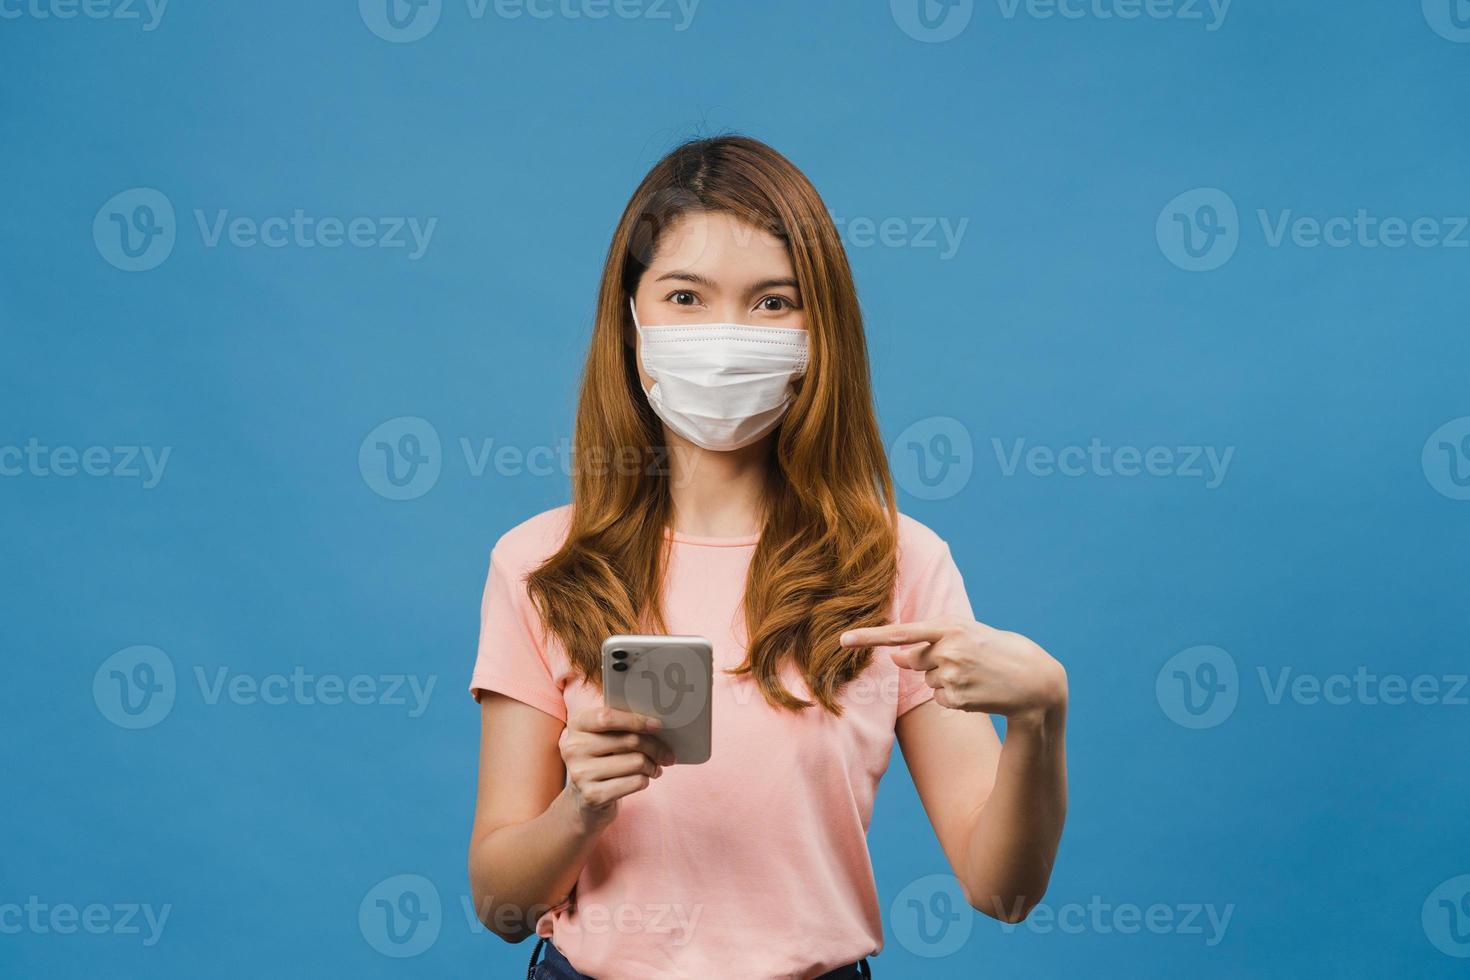 jong azië meisje met medisch gezichtsmasker met behulp van mobiele telefoon met gekleed in casual kleding geïsoleerd op blauwe achtergrond. zelfisolatie, sociale afstand, quarantaine voor preventie van het coronavirus. foto